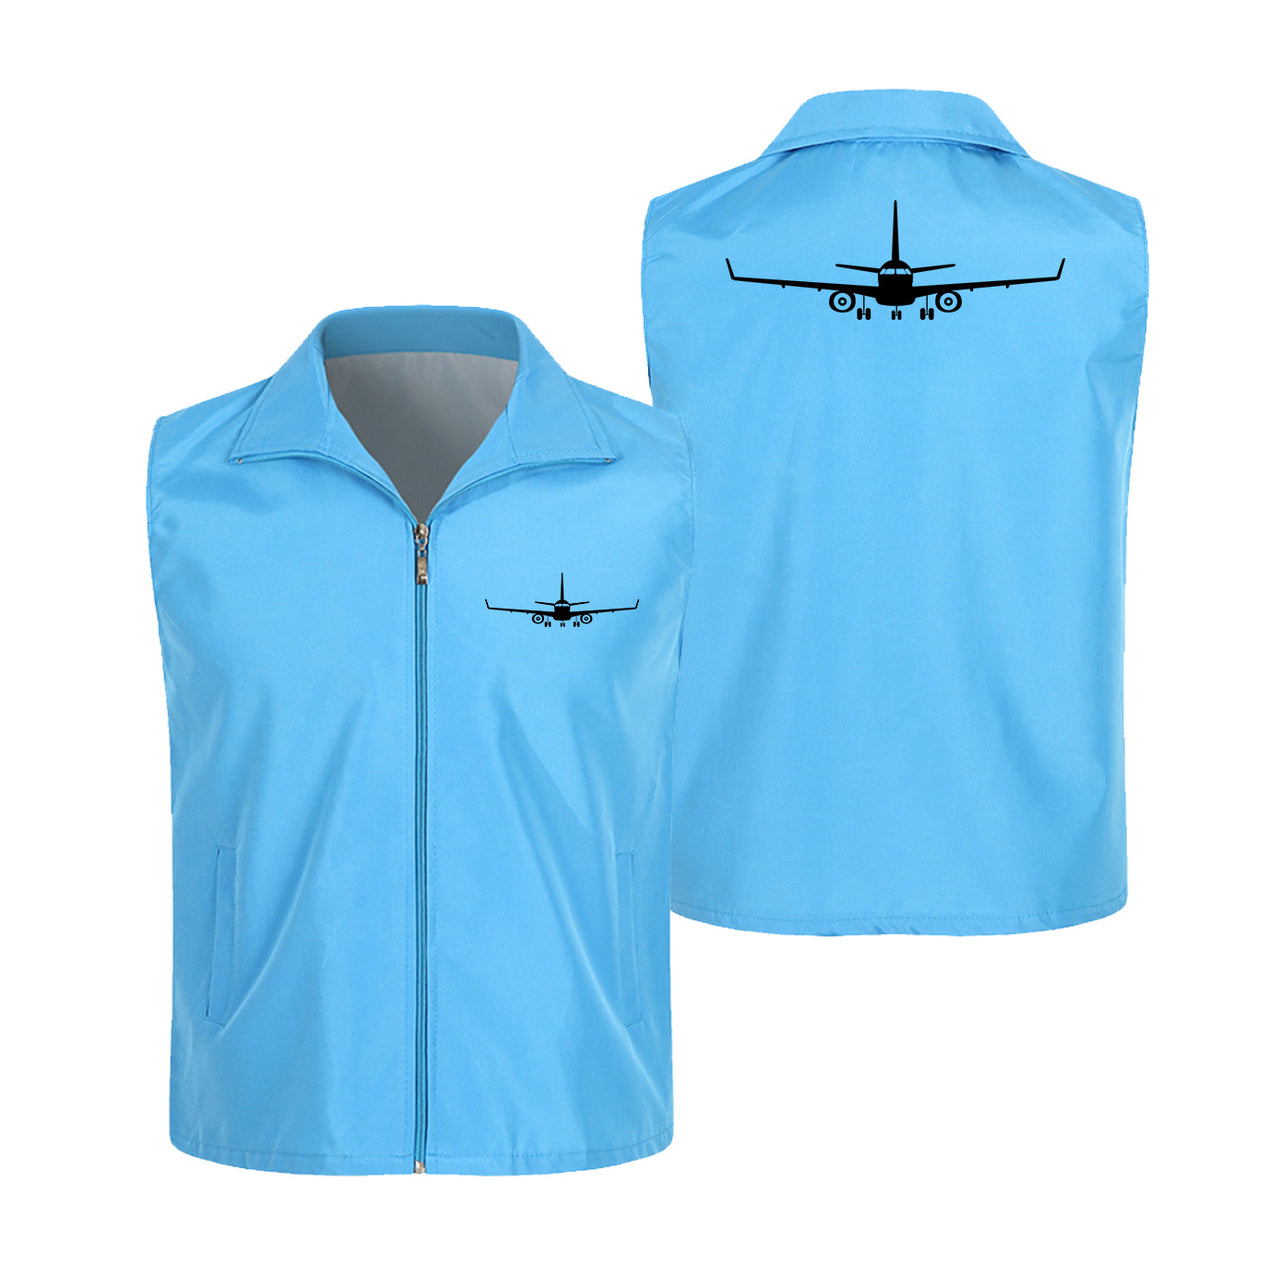 Embraer E-190 Silhouette Plane Designed Thin Style Vests